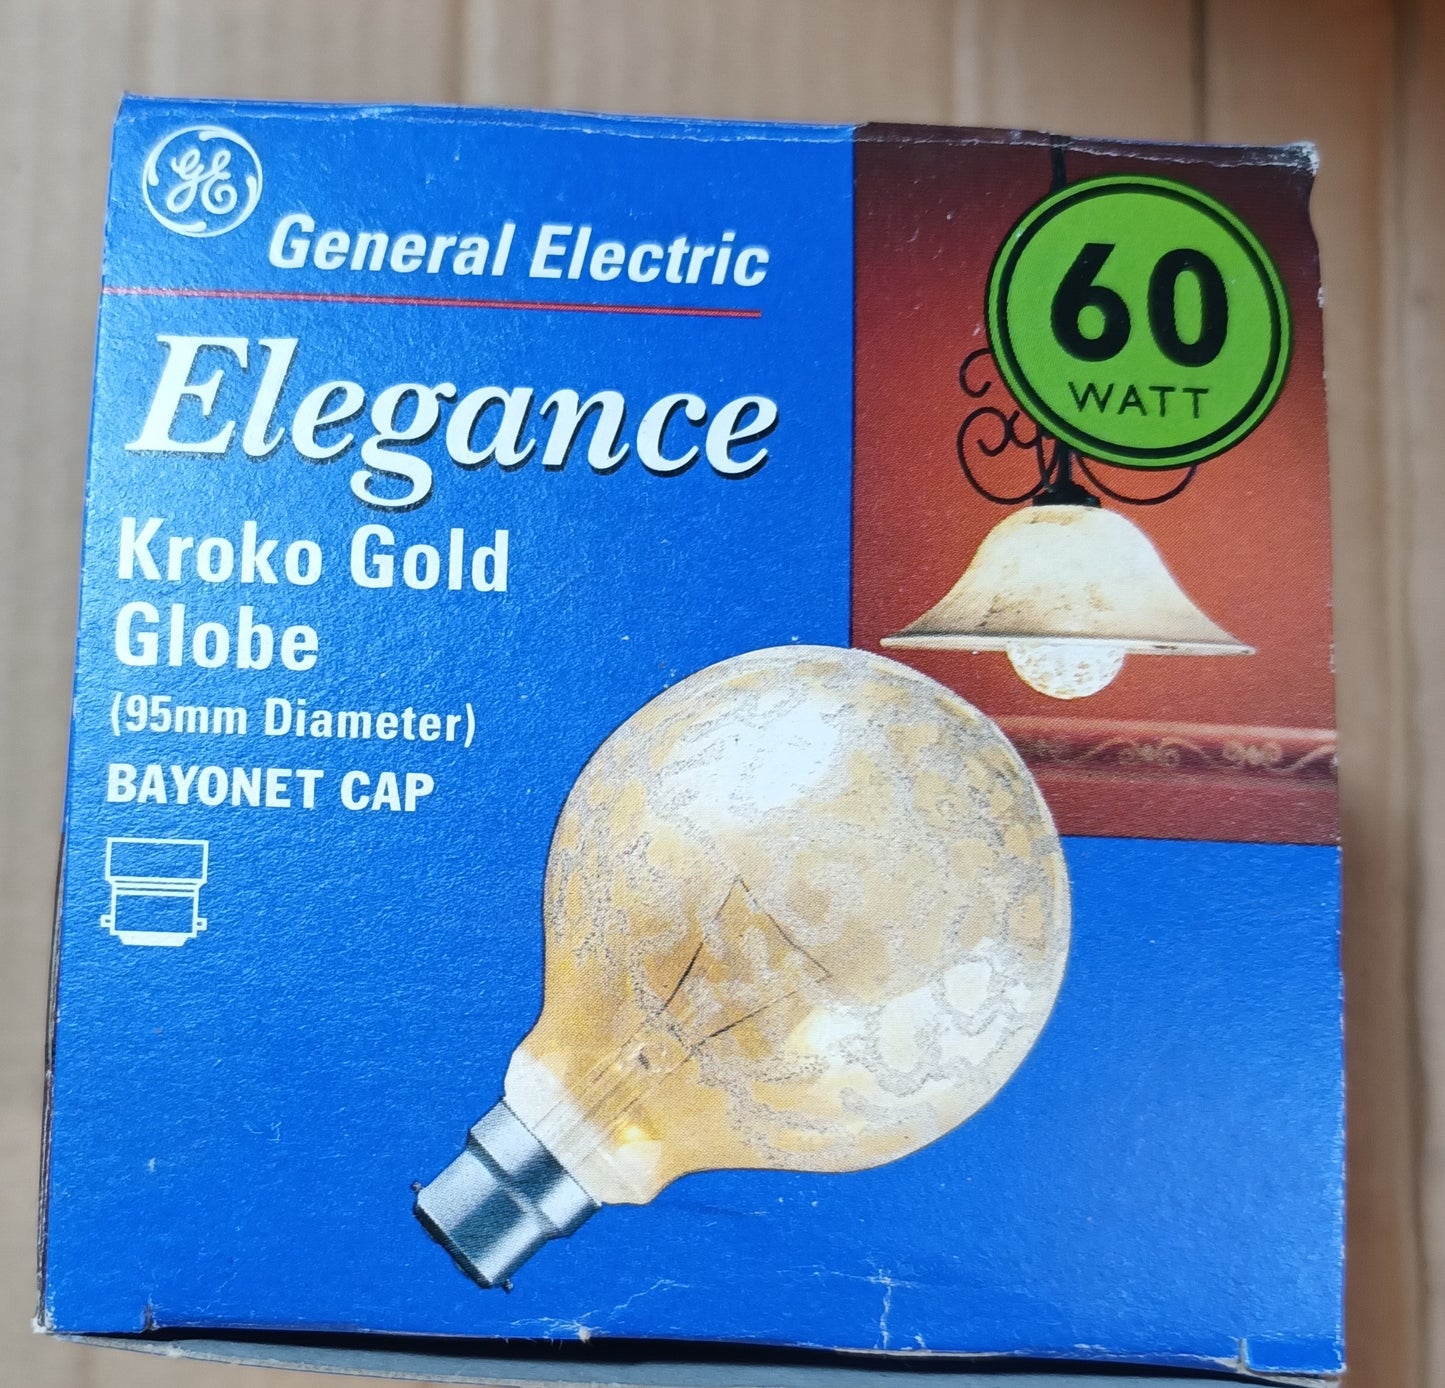 Kroko Gold G95 Globe 60w BC / B22 by GE